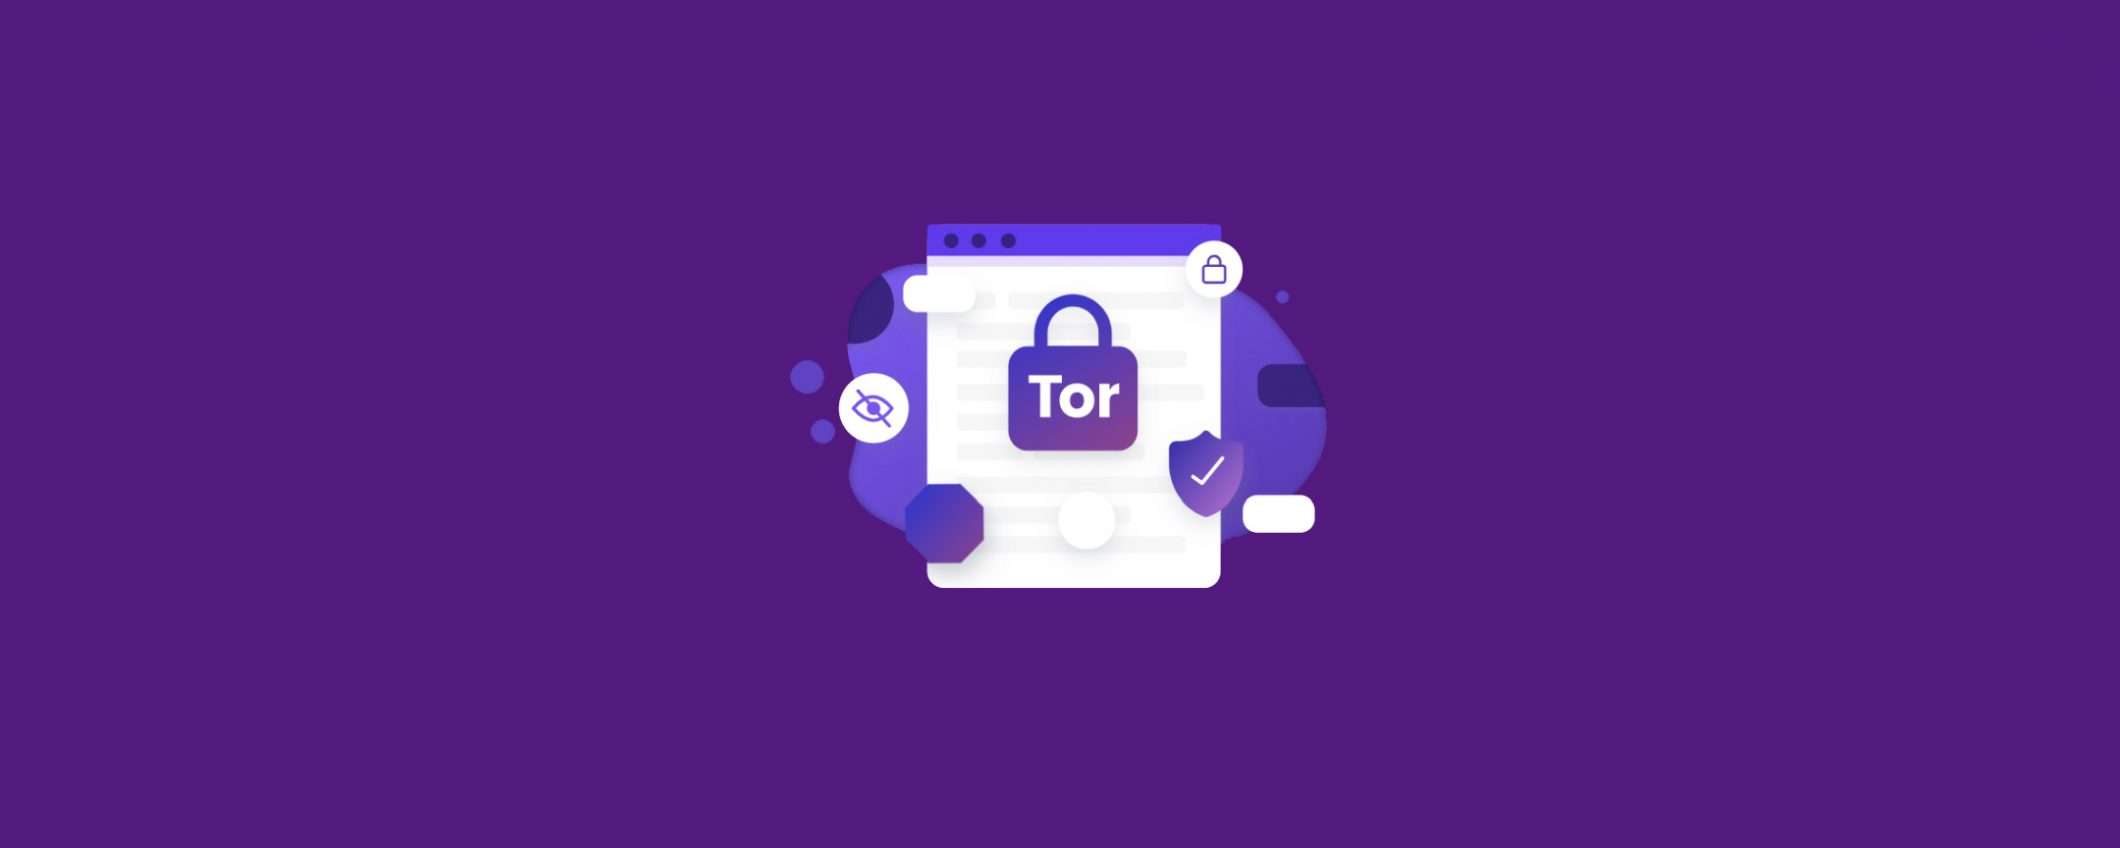 Brave invia traffico Tor al server DNS pubblico